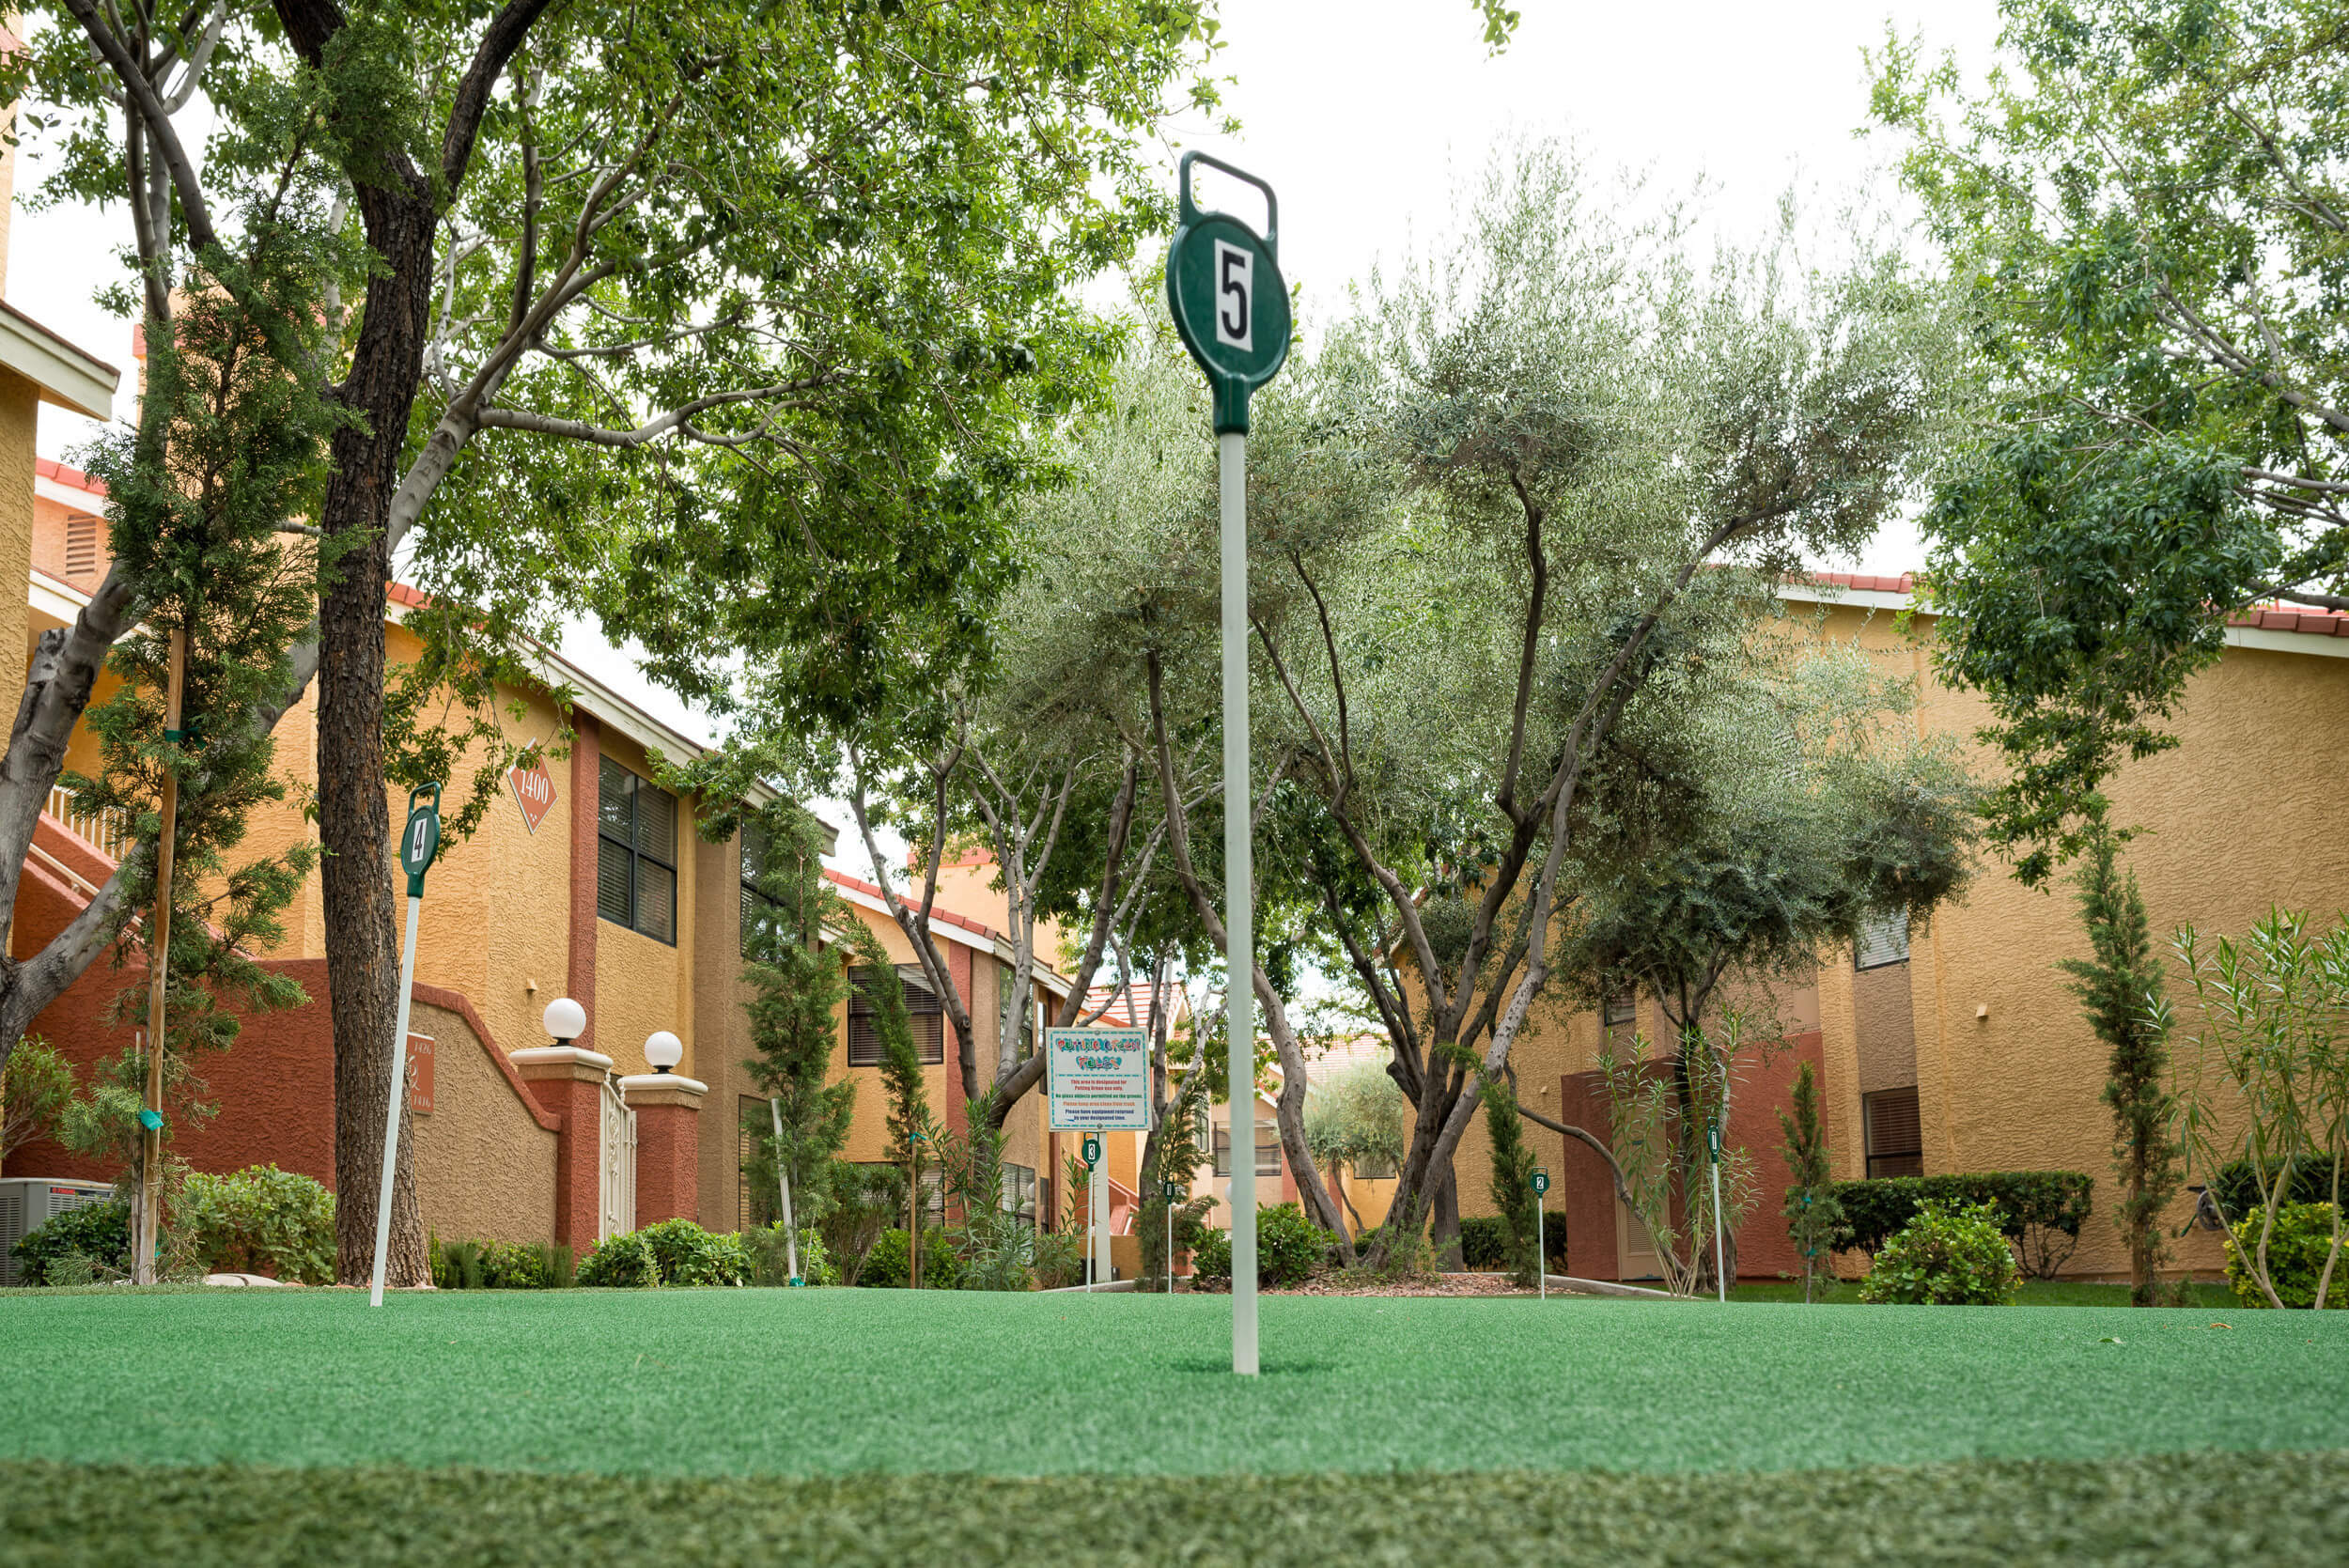 Putting green at Mini Golf Course | Westgate Flamingo Bay Resort | Westgate Resorts in Las Vegas NV